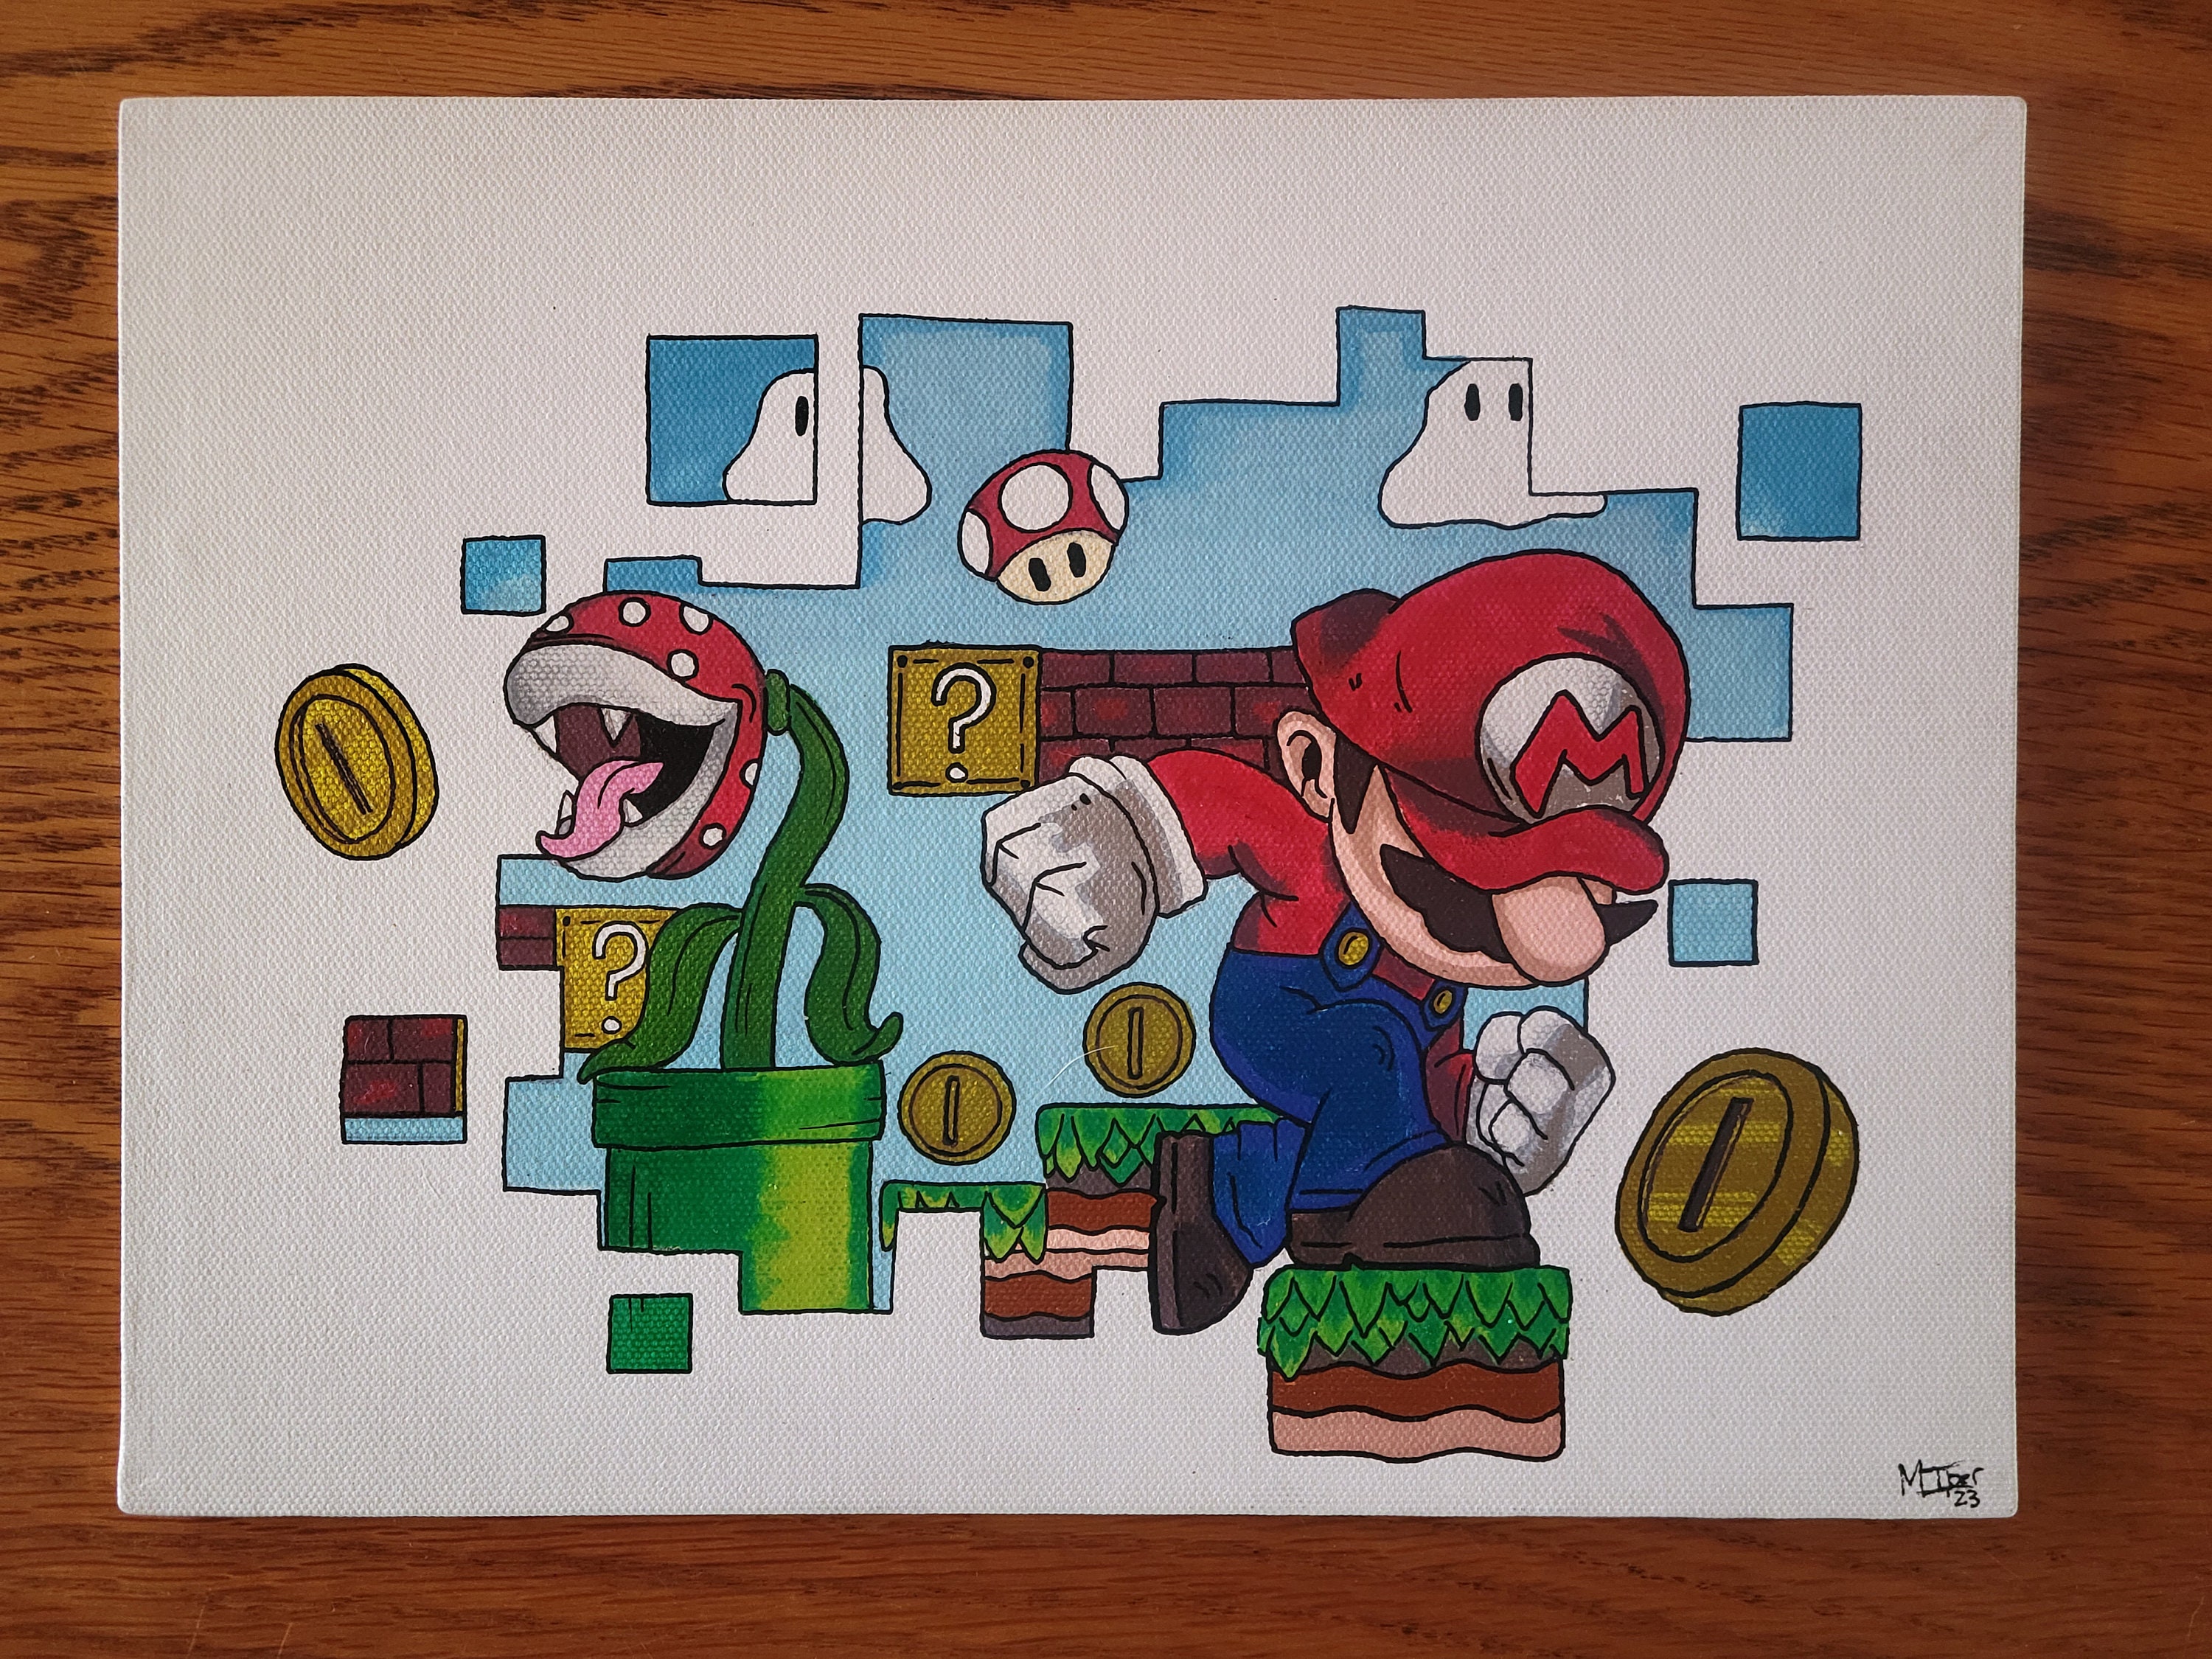 Mario sketch pencil | Mario Amino